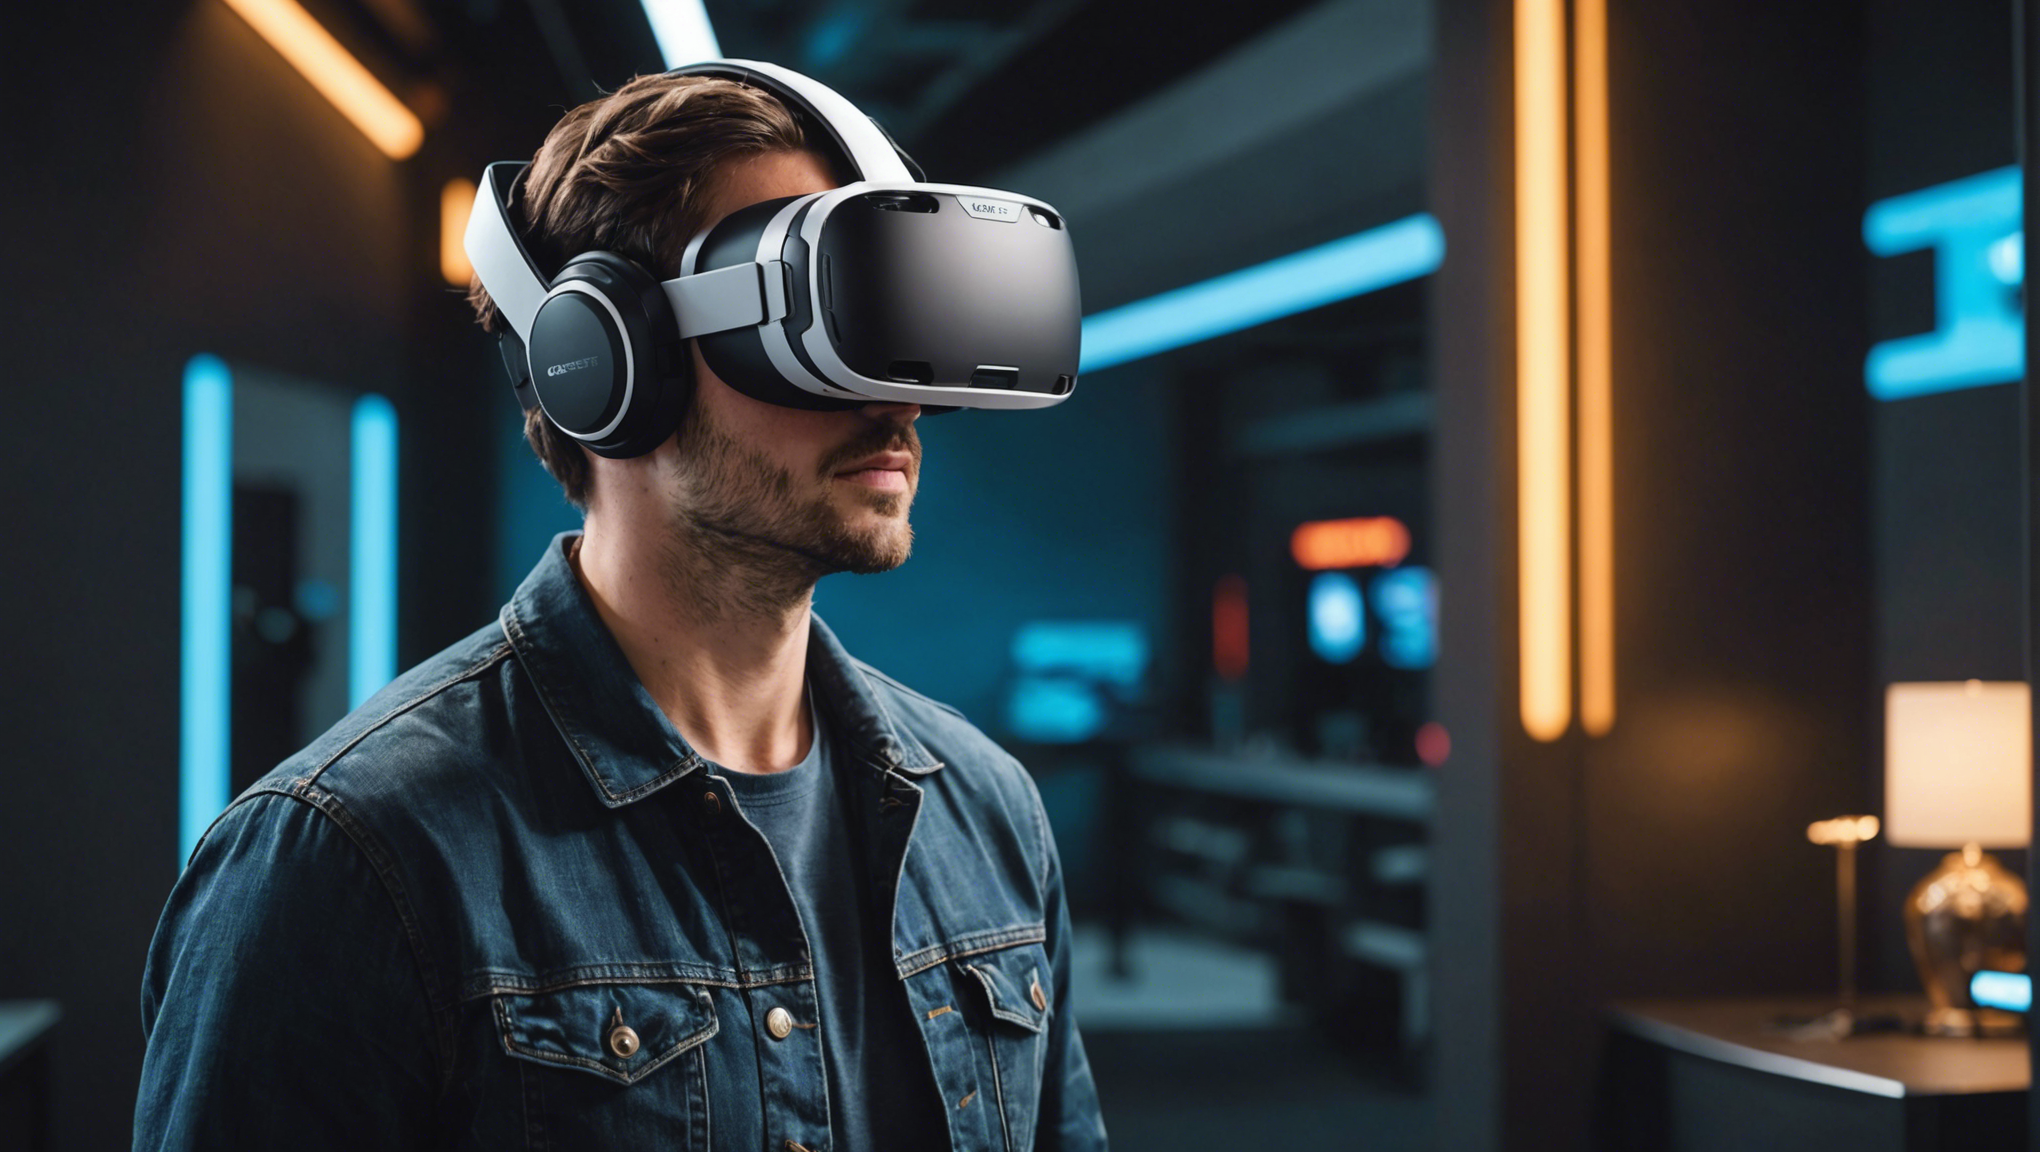 découvrez le casque vr meta quest 2 et plongez dans une nouvelle expérience de réalité virtuelle révolutionnaire. profitez d'une immersion totale et explorez un monde virtuel inédit avec ce bijou de technologie.